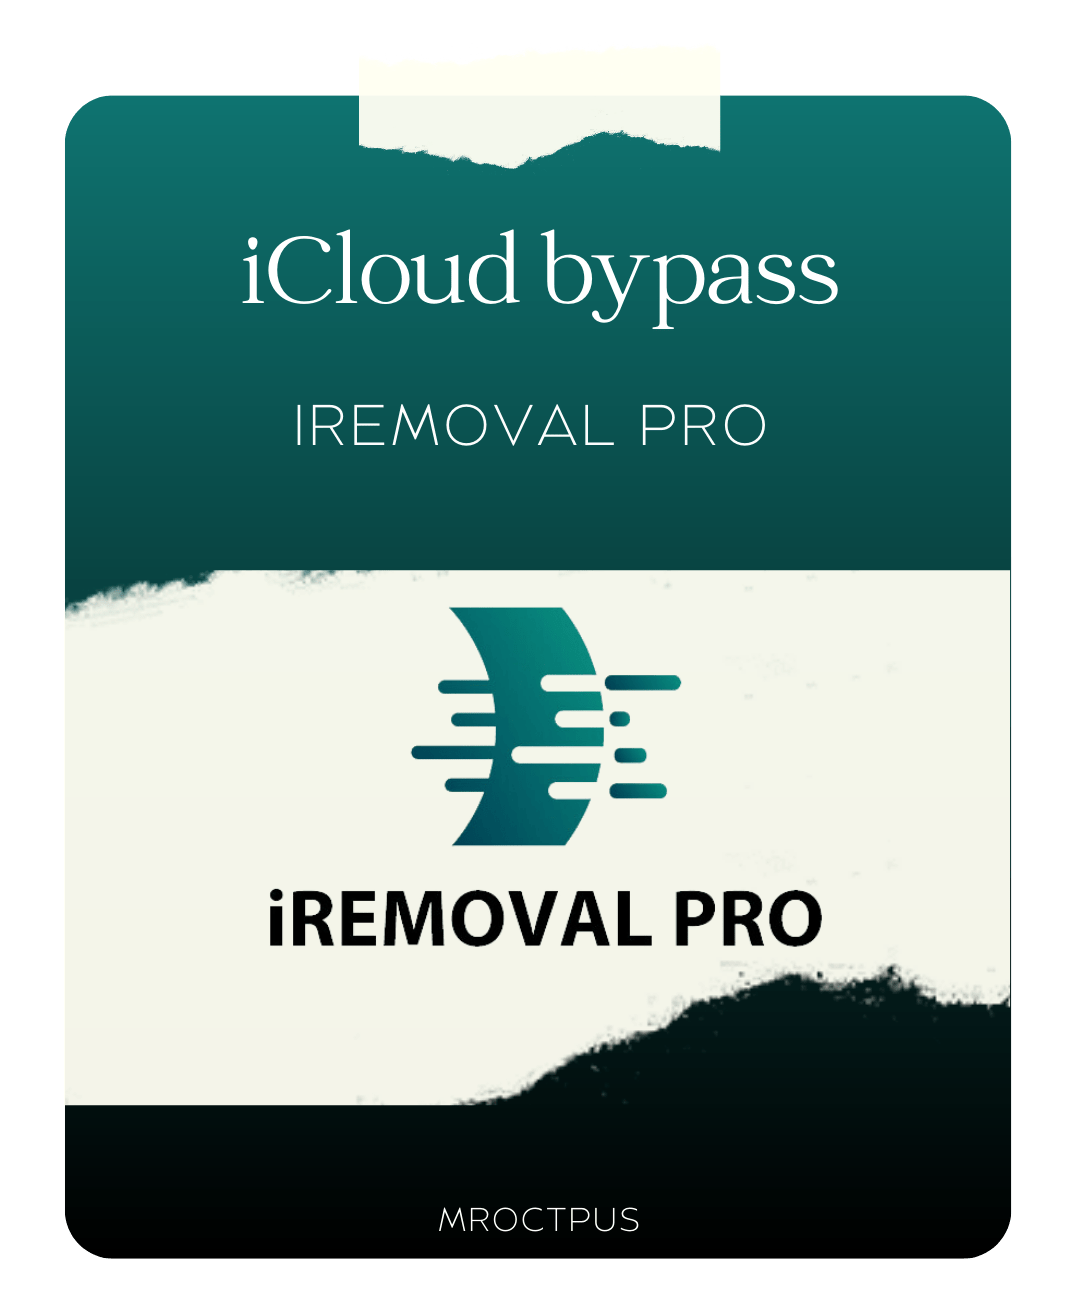 بایپس iCloud با سرویس iRemoval Pro